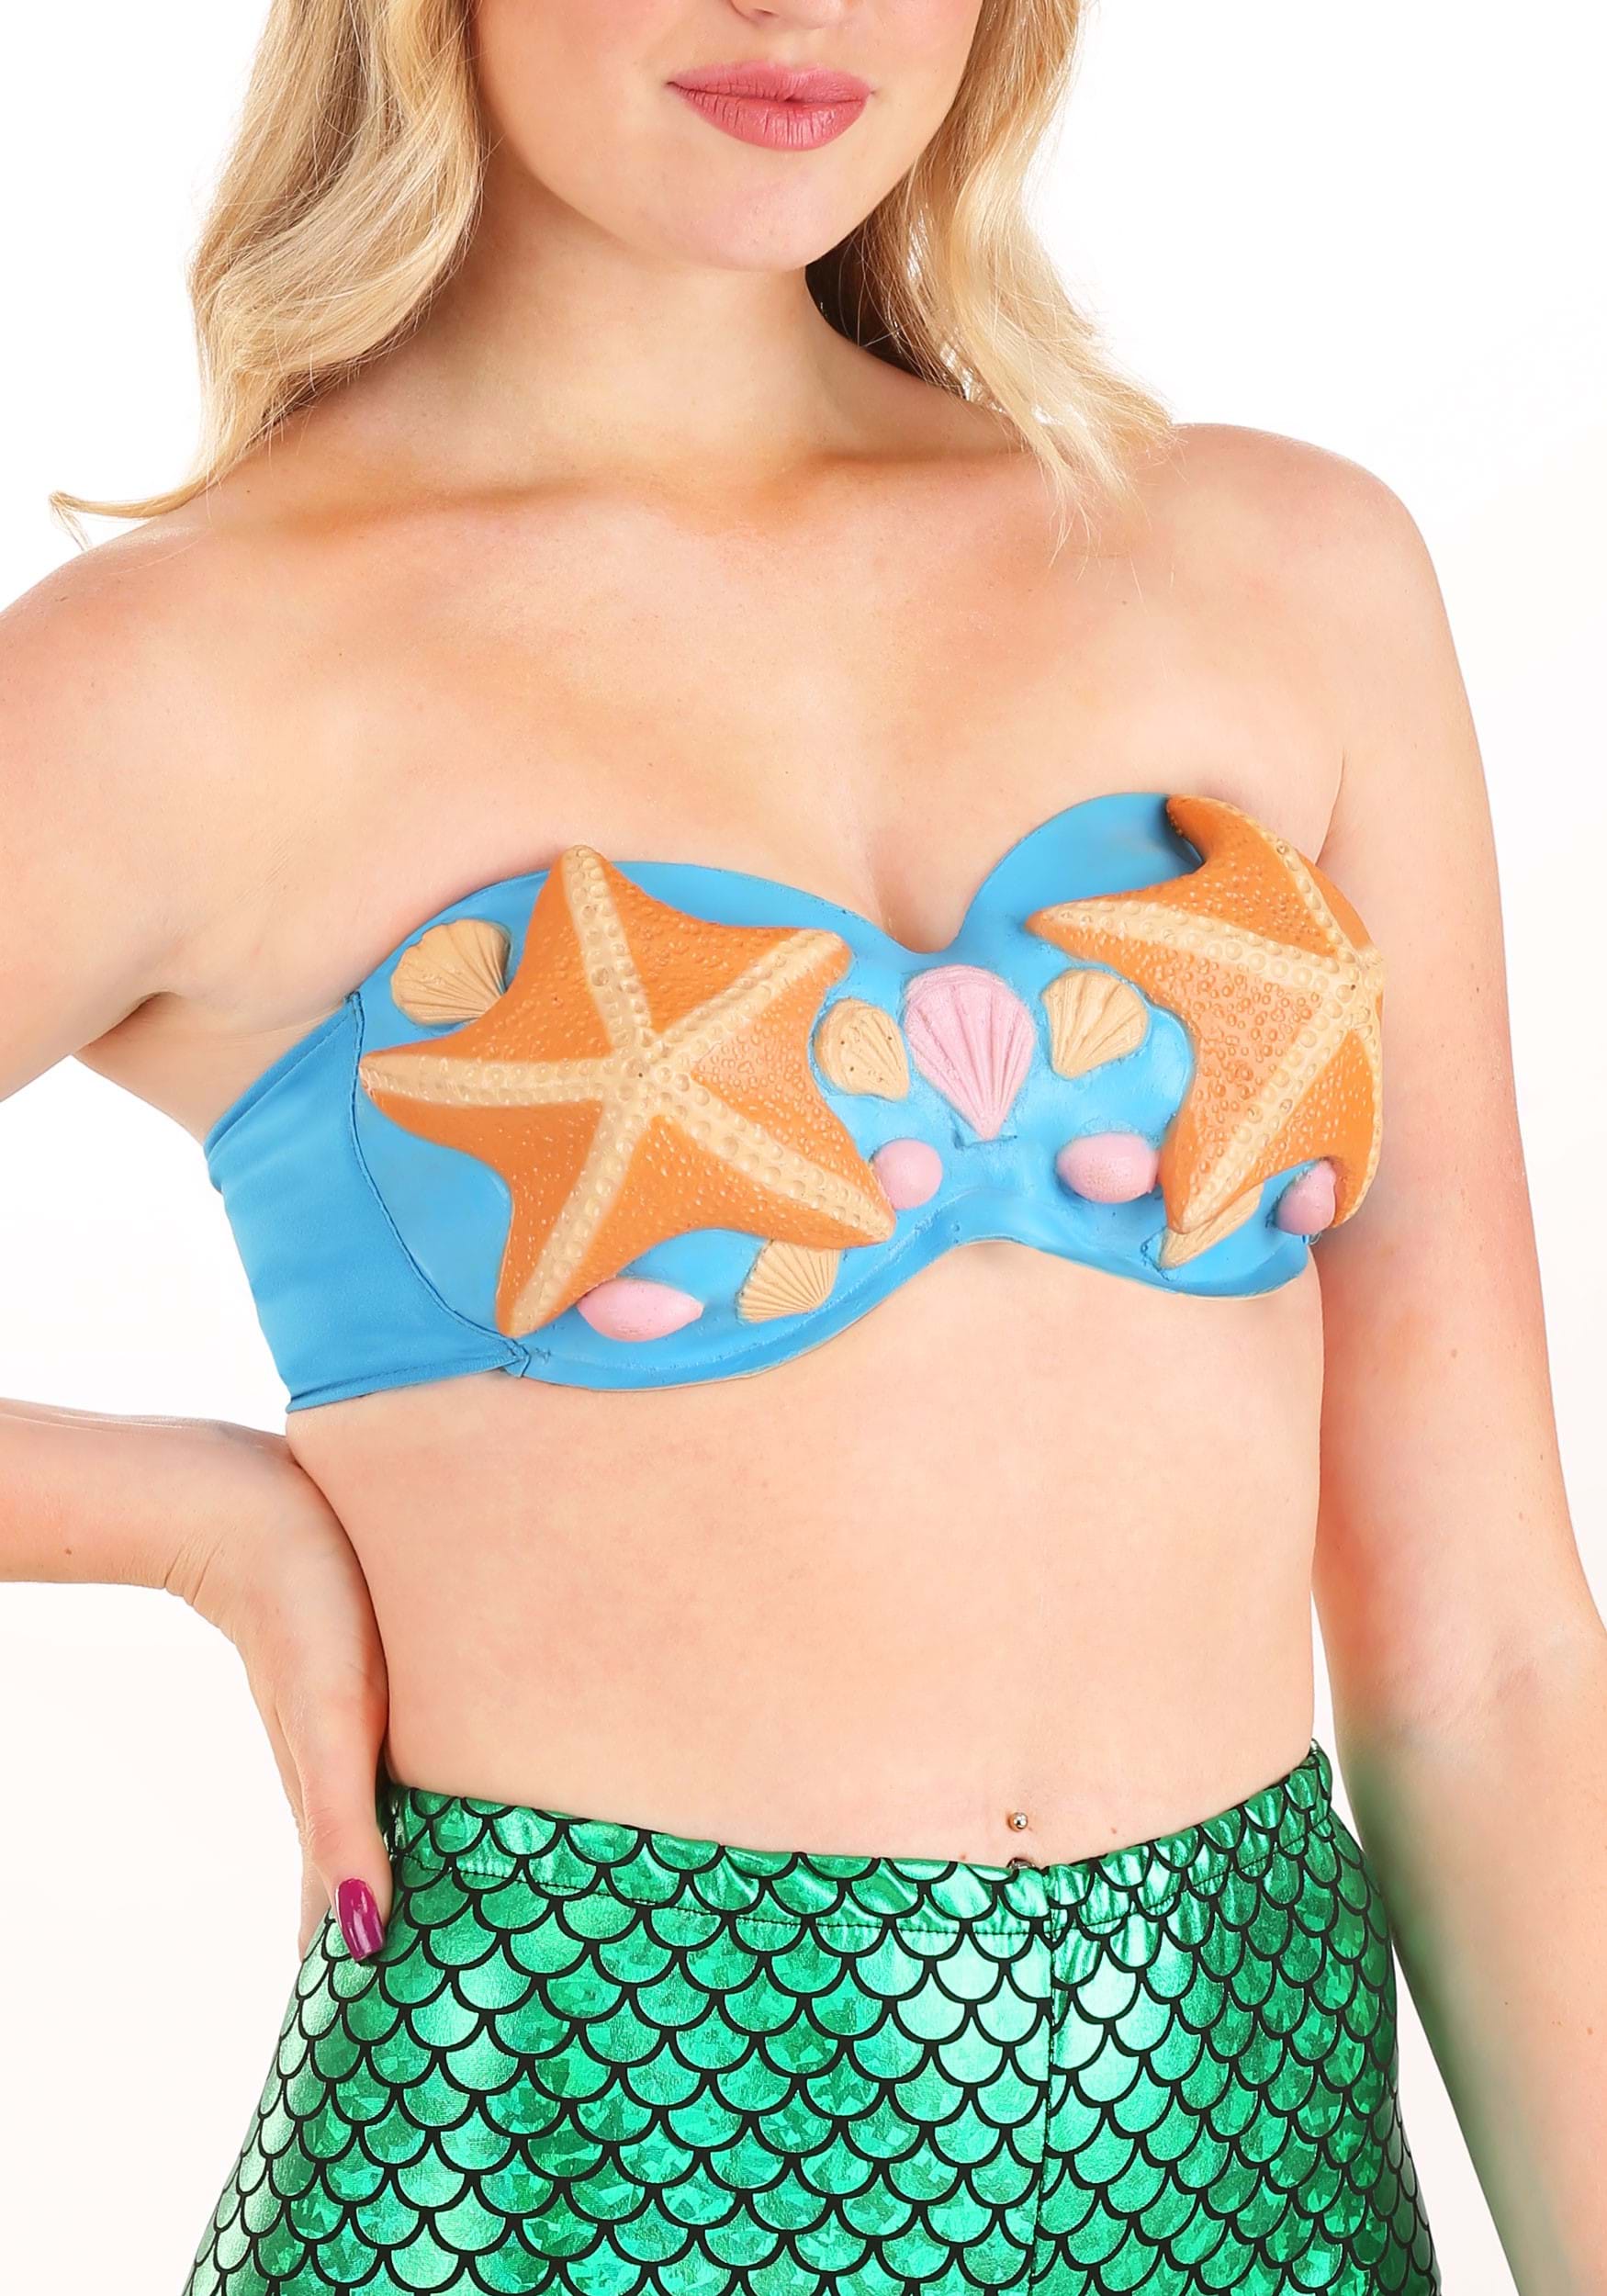 Mermaid clam shell bras  Mermaid fashion, Mermaid costume diy